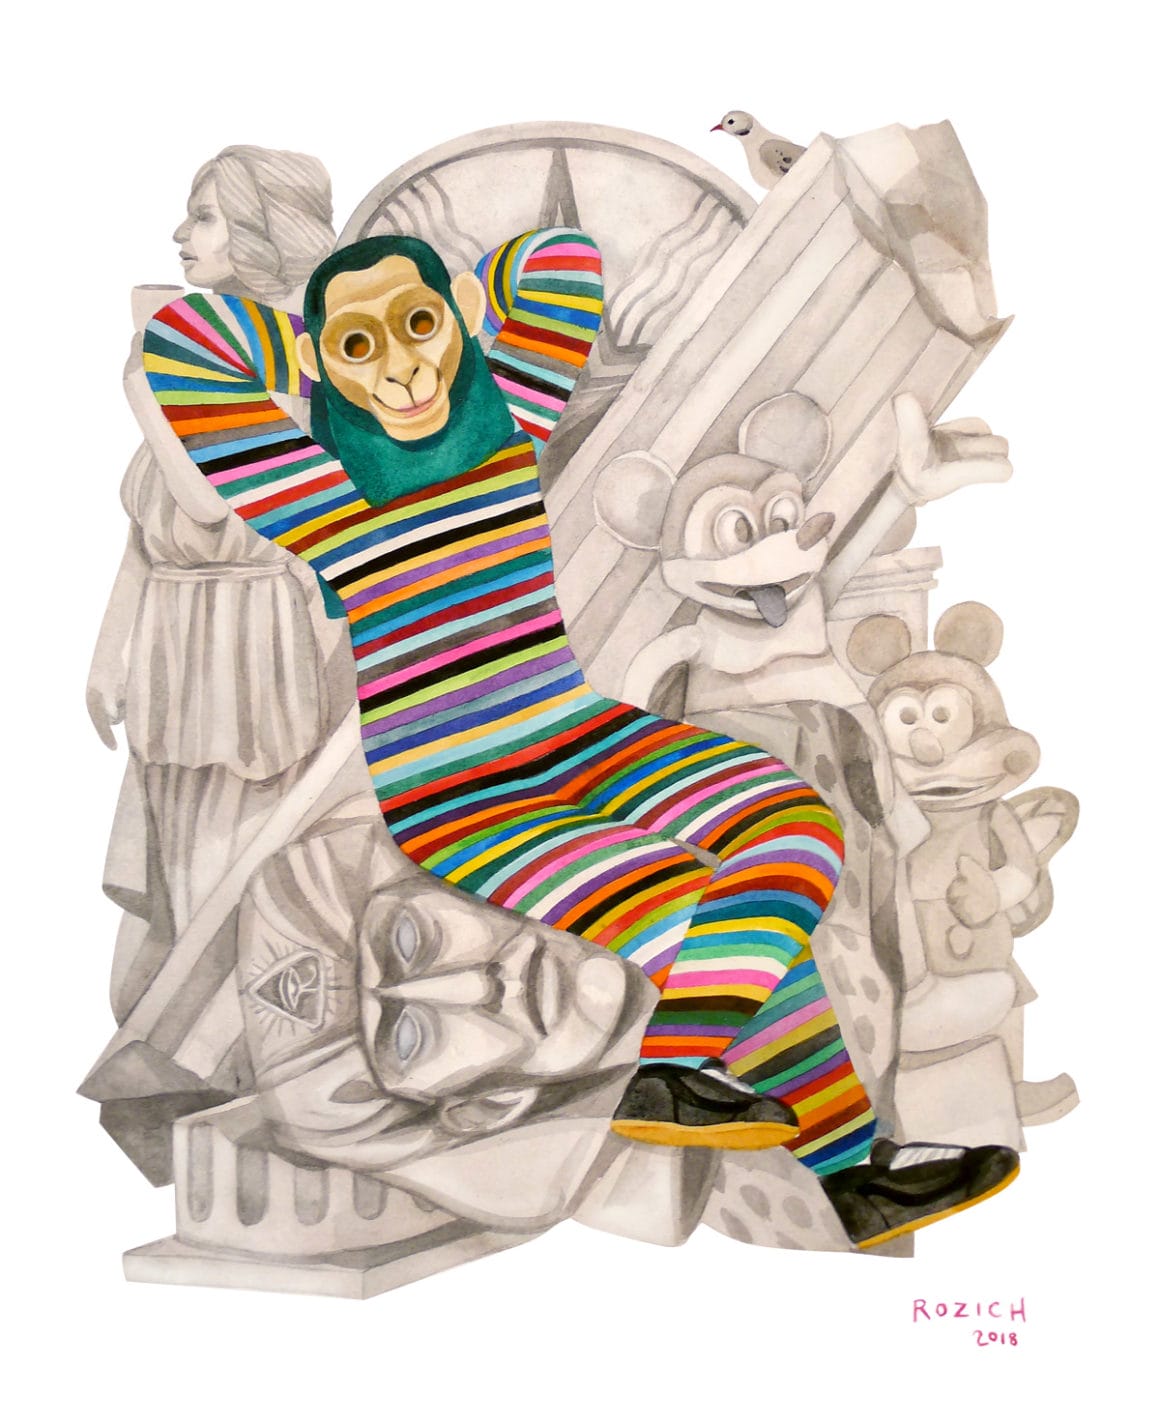 Stacey Rozich, Singe assis sur une sculpture en marbre représentant à la fois Mickey, un pharaon etc. 